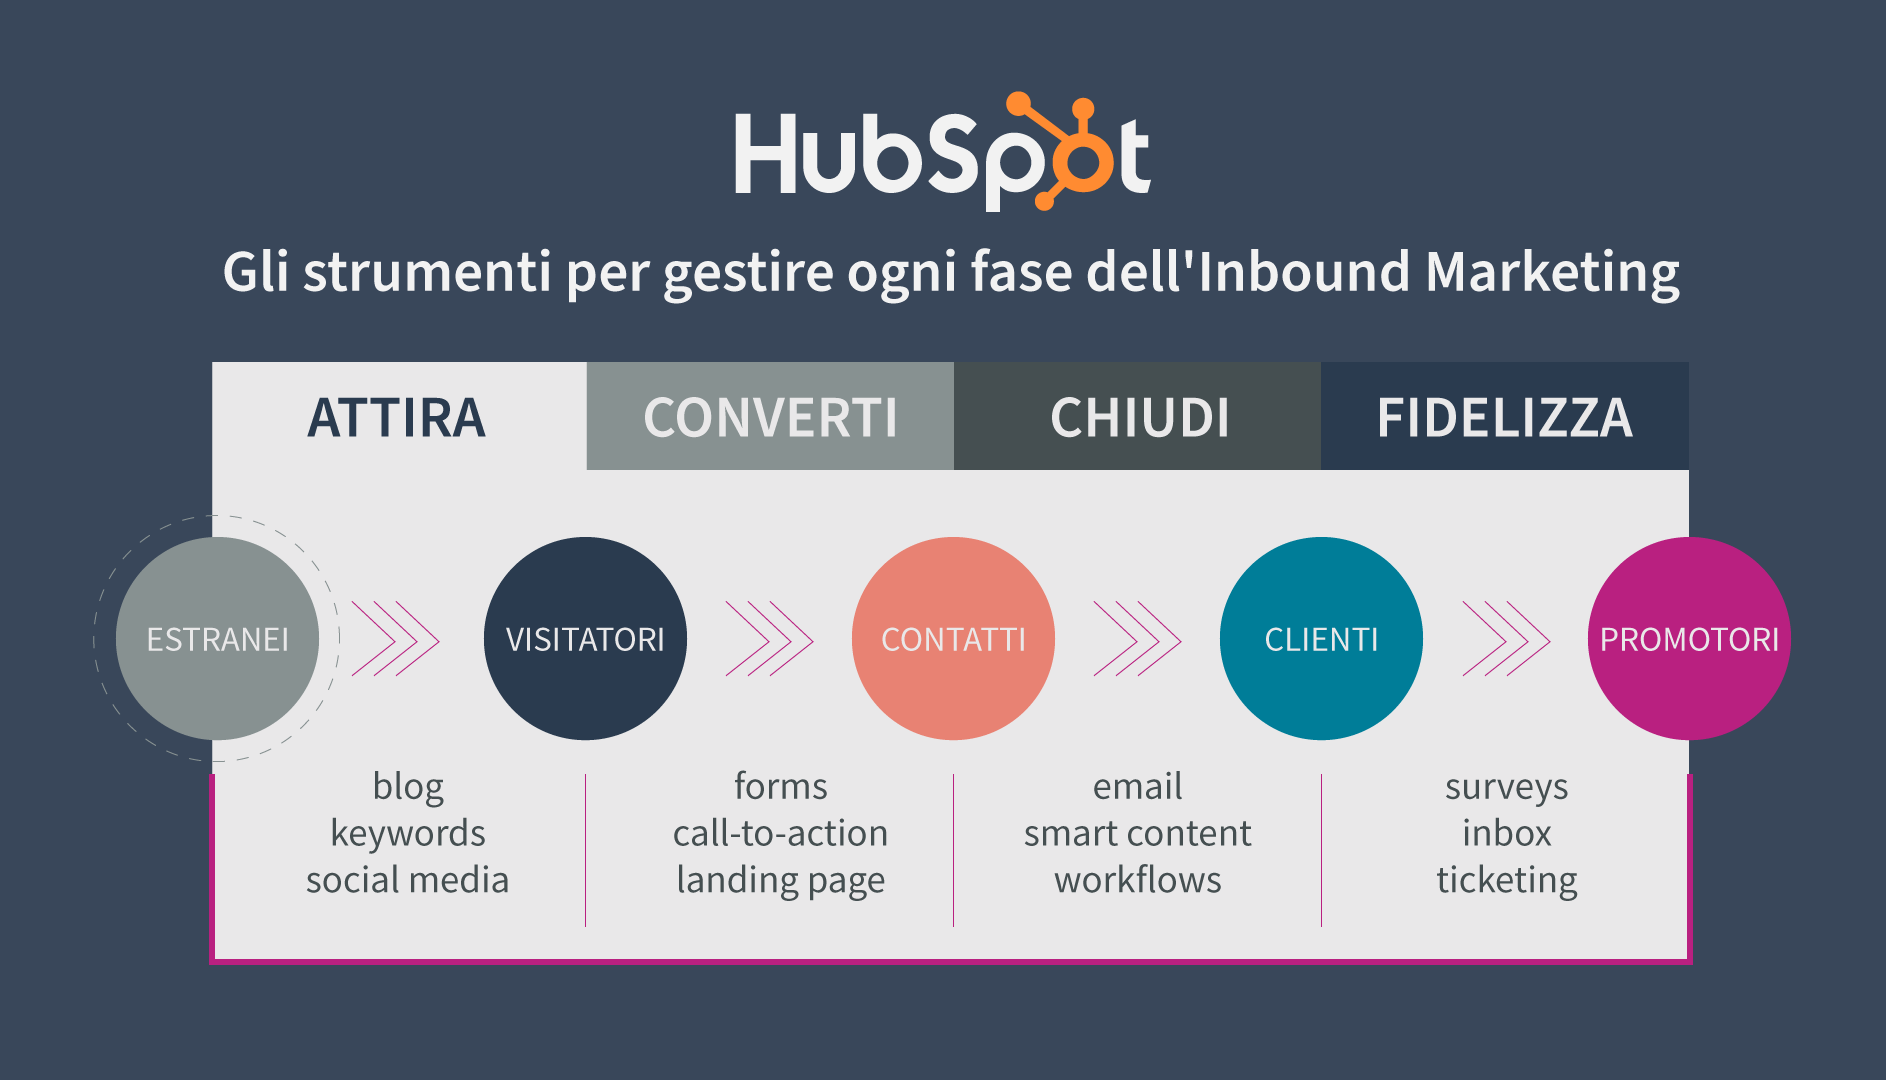 HubSpot: la piattaforma per gestire ogni fase dell'Inbound Marketing